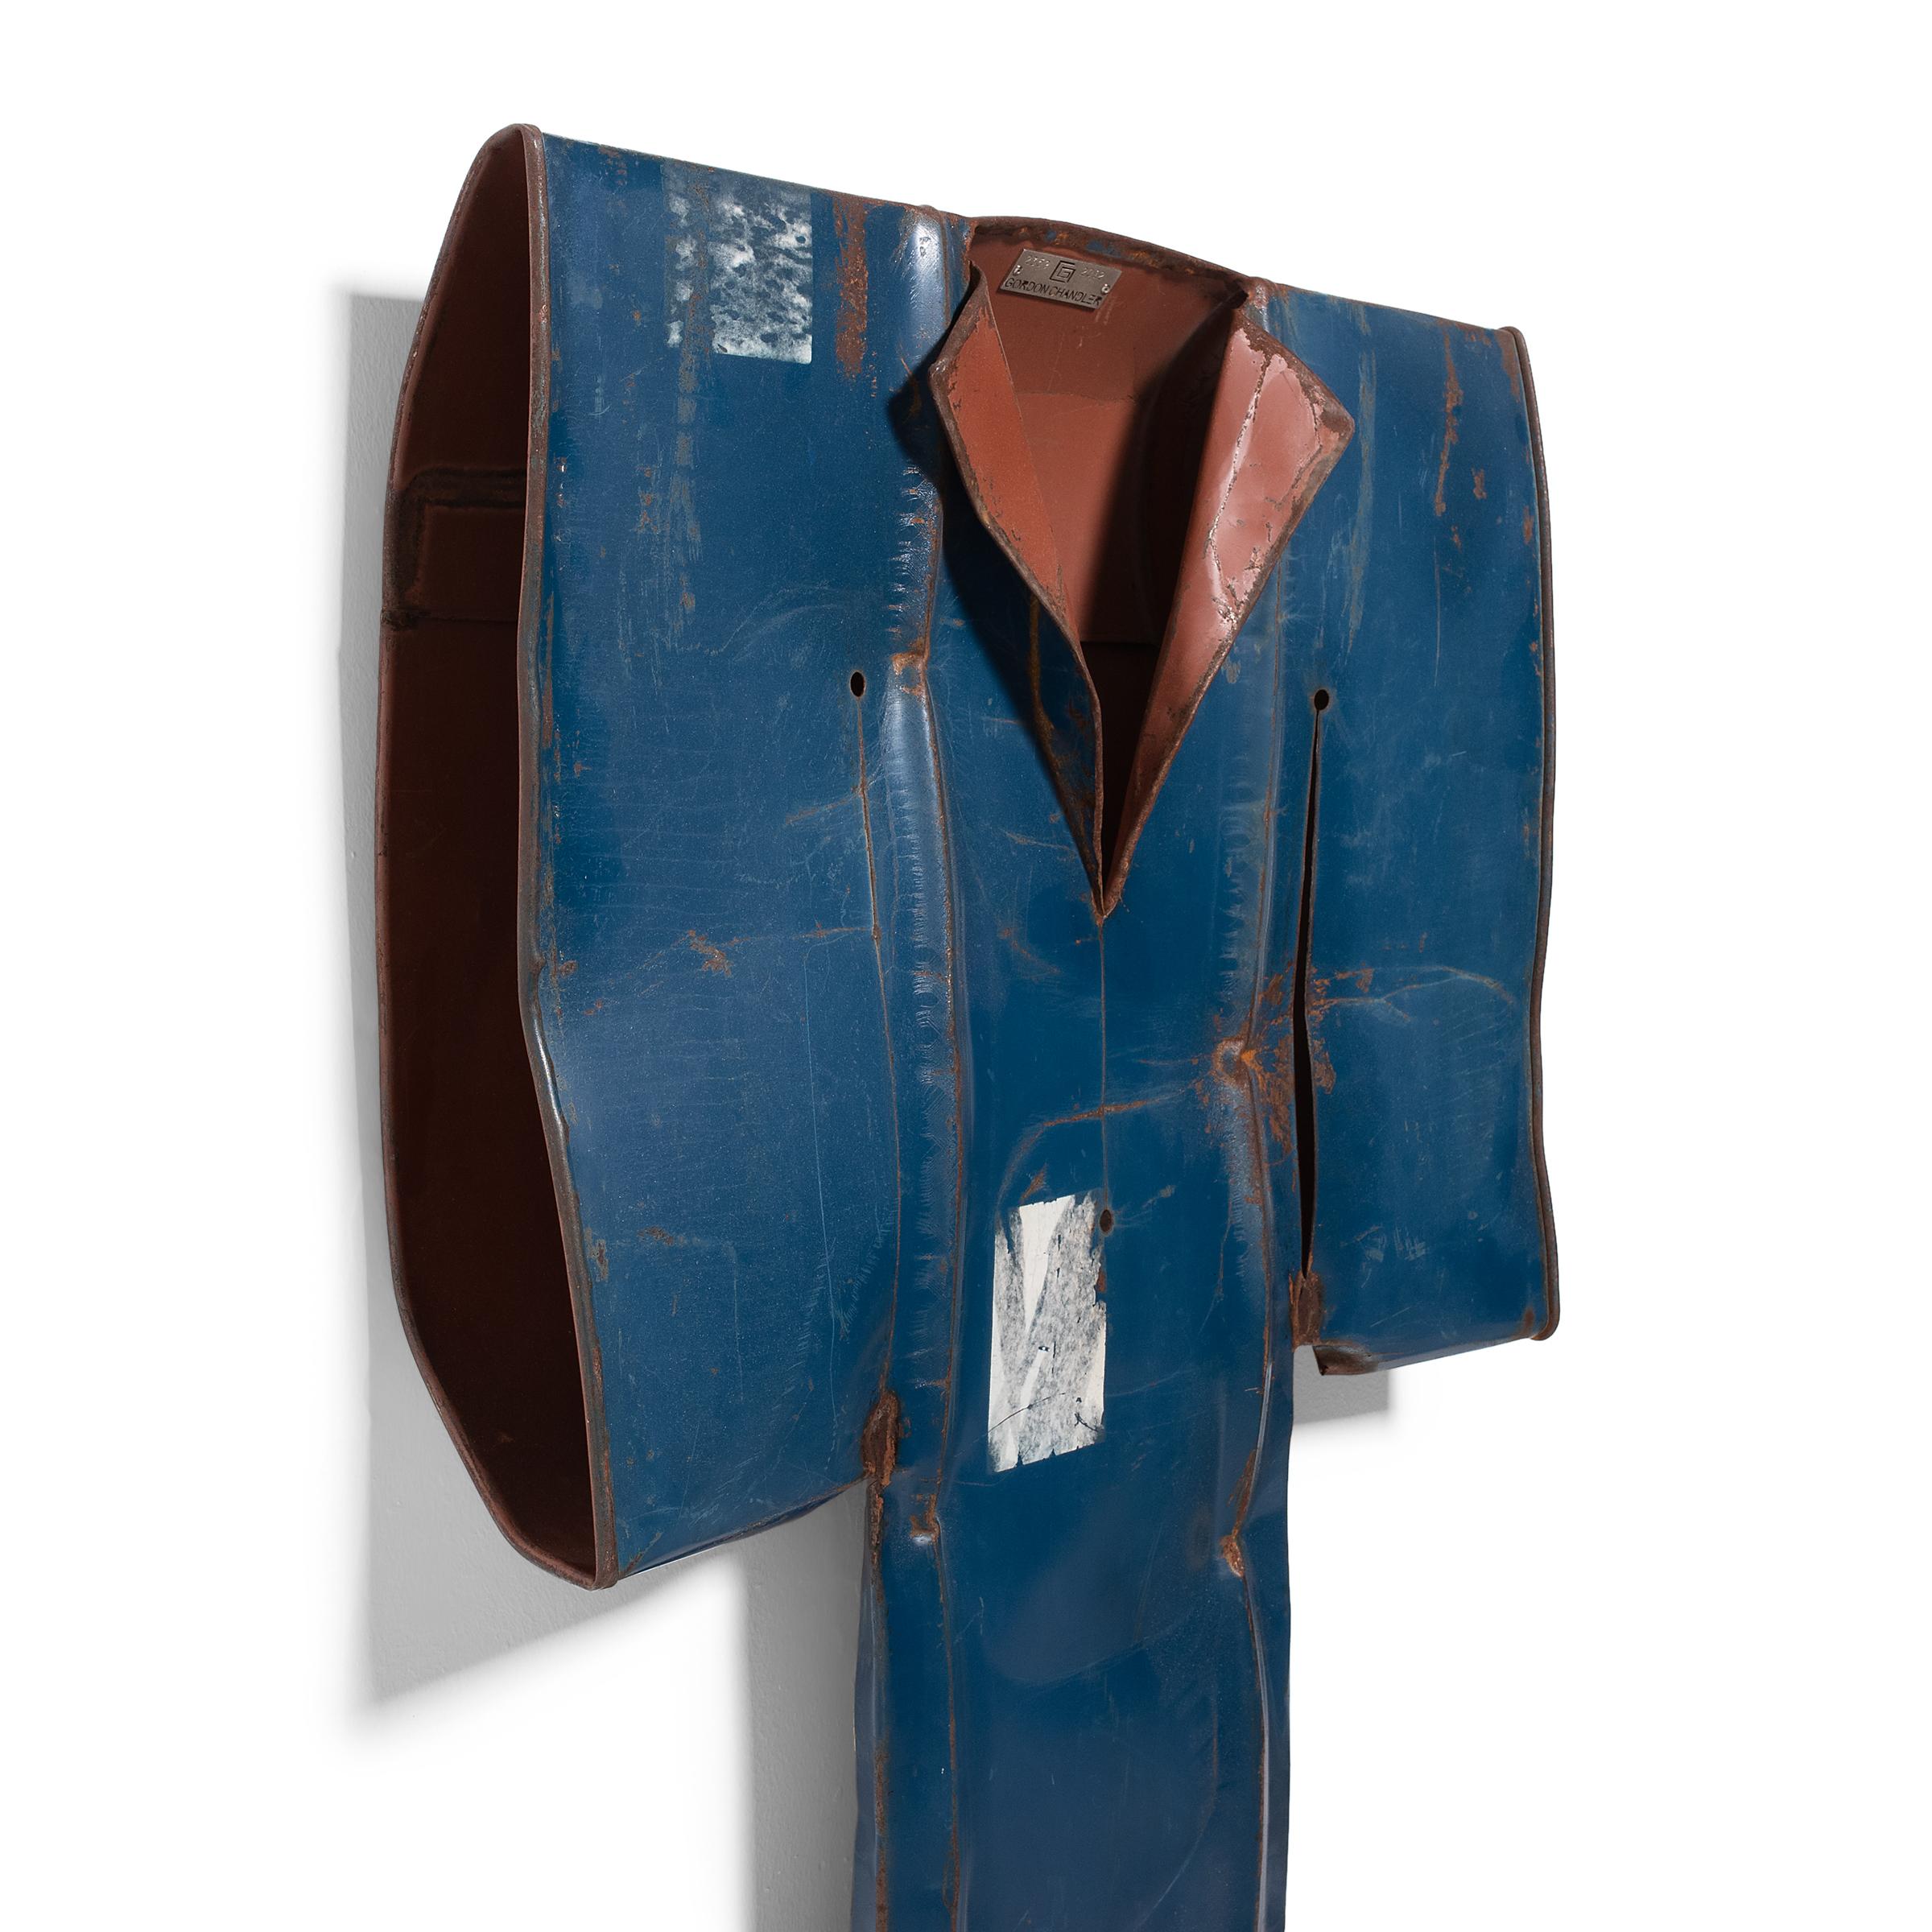 Als der Künstler Gordon Chandler eine verwitterte Stahltrommel entdeckte, die so verformt war, dass sie dem Ärmel eines Kleidungsstücks ähnelte, wurde er zu einer Serie von Kimono-Skulpturen inspiriert, die aus gefundenen Metallresten geformt